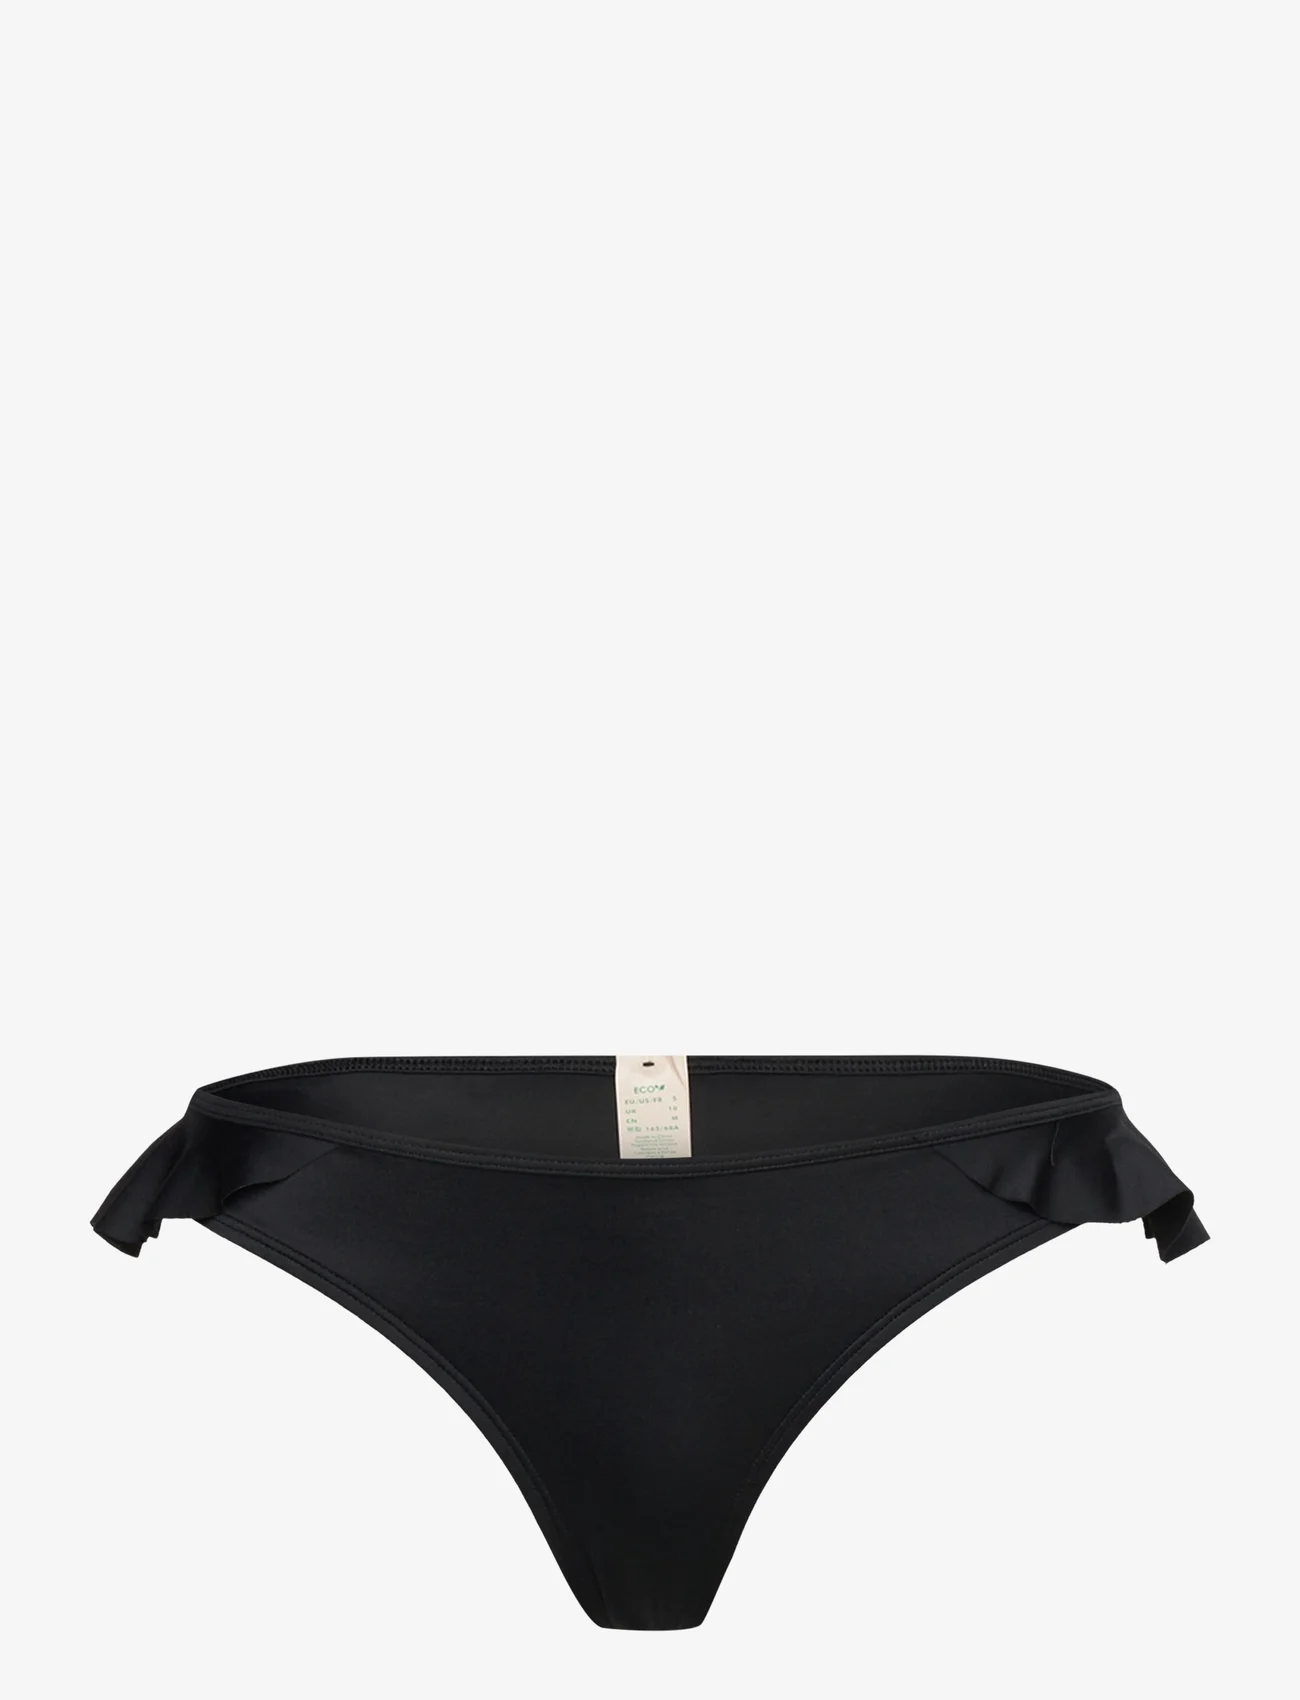 Dorina - NAIA BRIEF - bikini-slips - black - 0